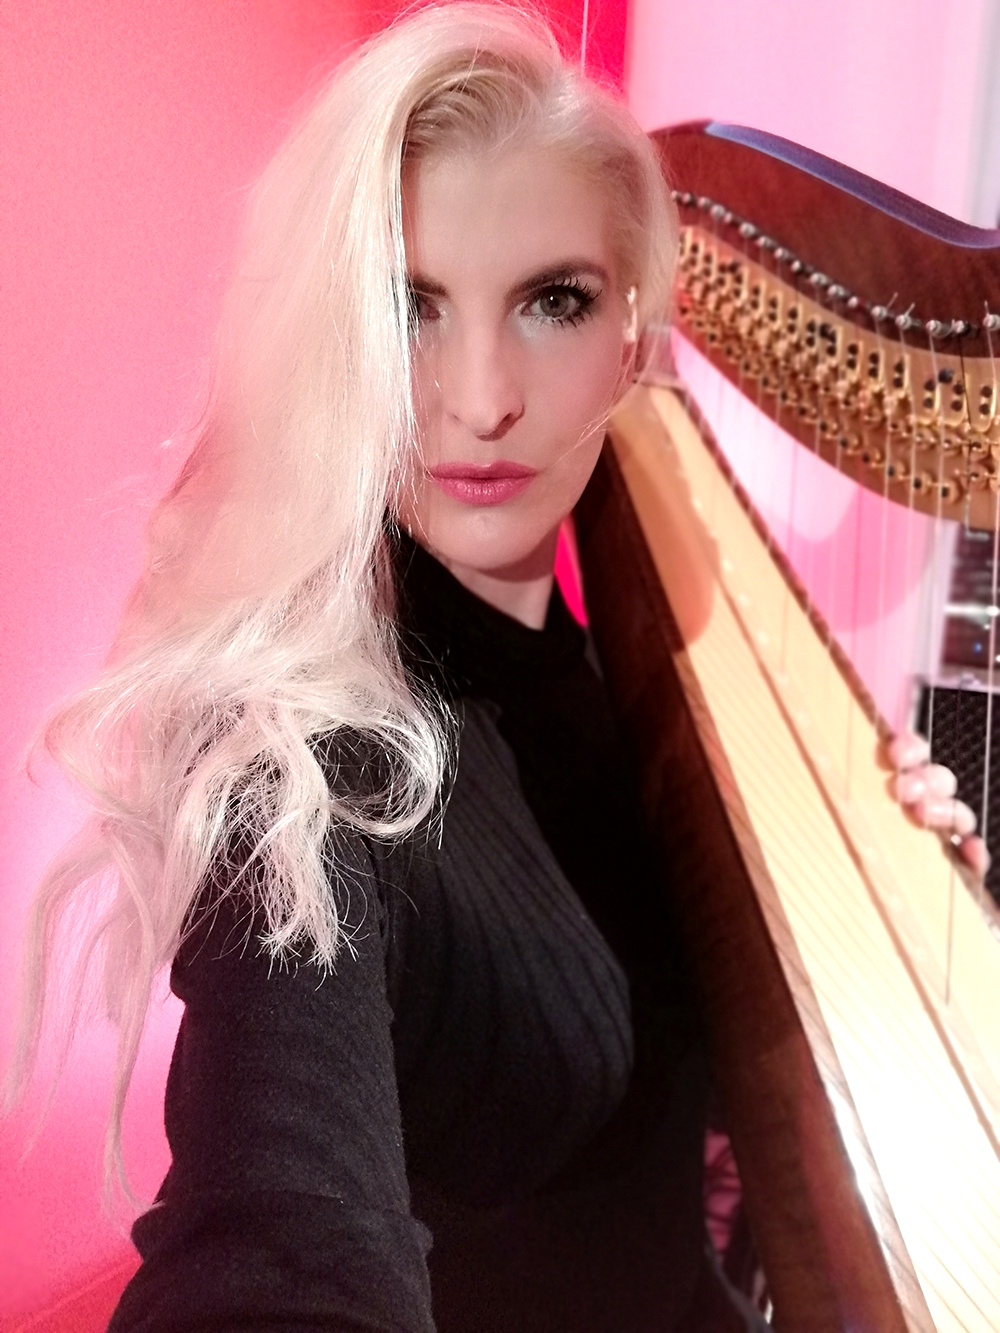 harp music in berlin, harp music hotel, harfenistin, harfinistin, harfistin